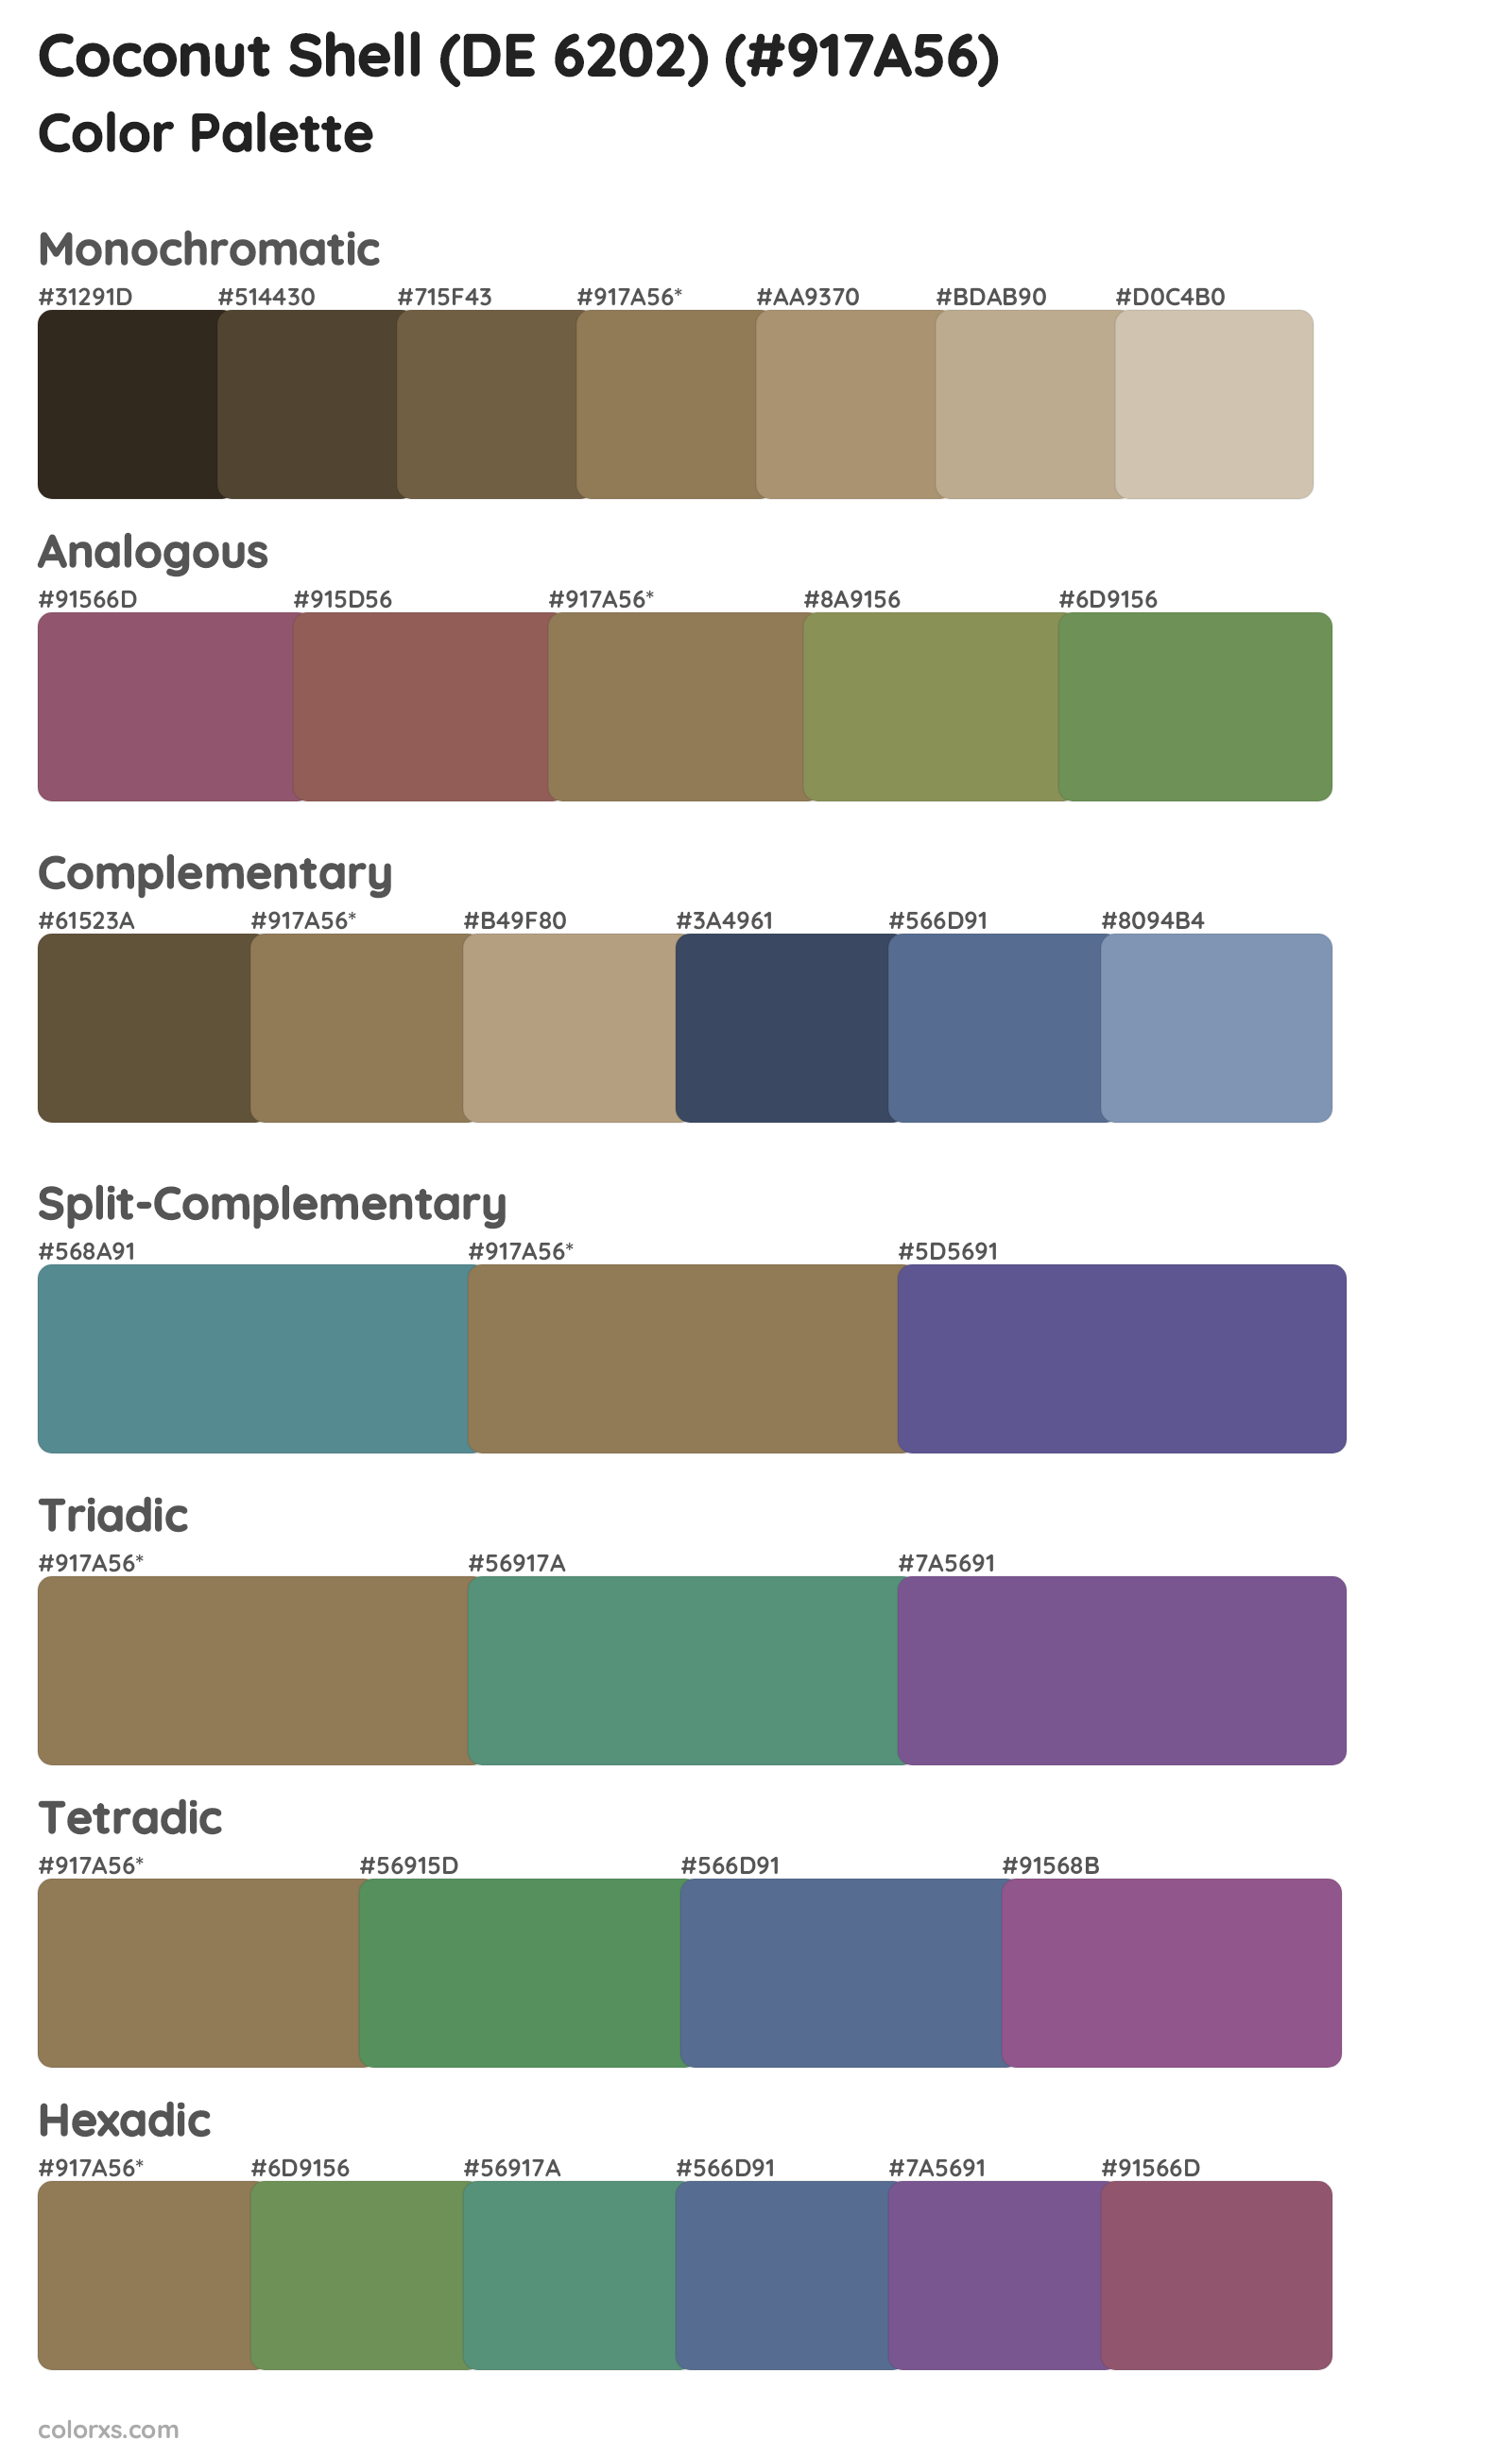 Coconut Shell (DE 6202) Color Scheme Palettes